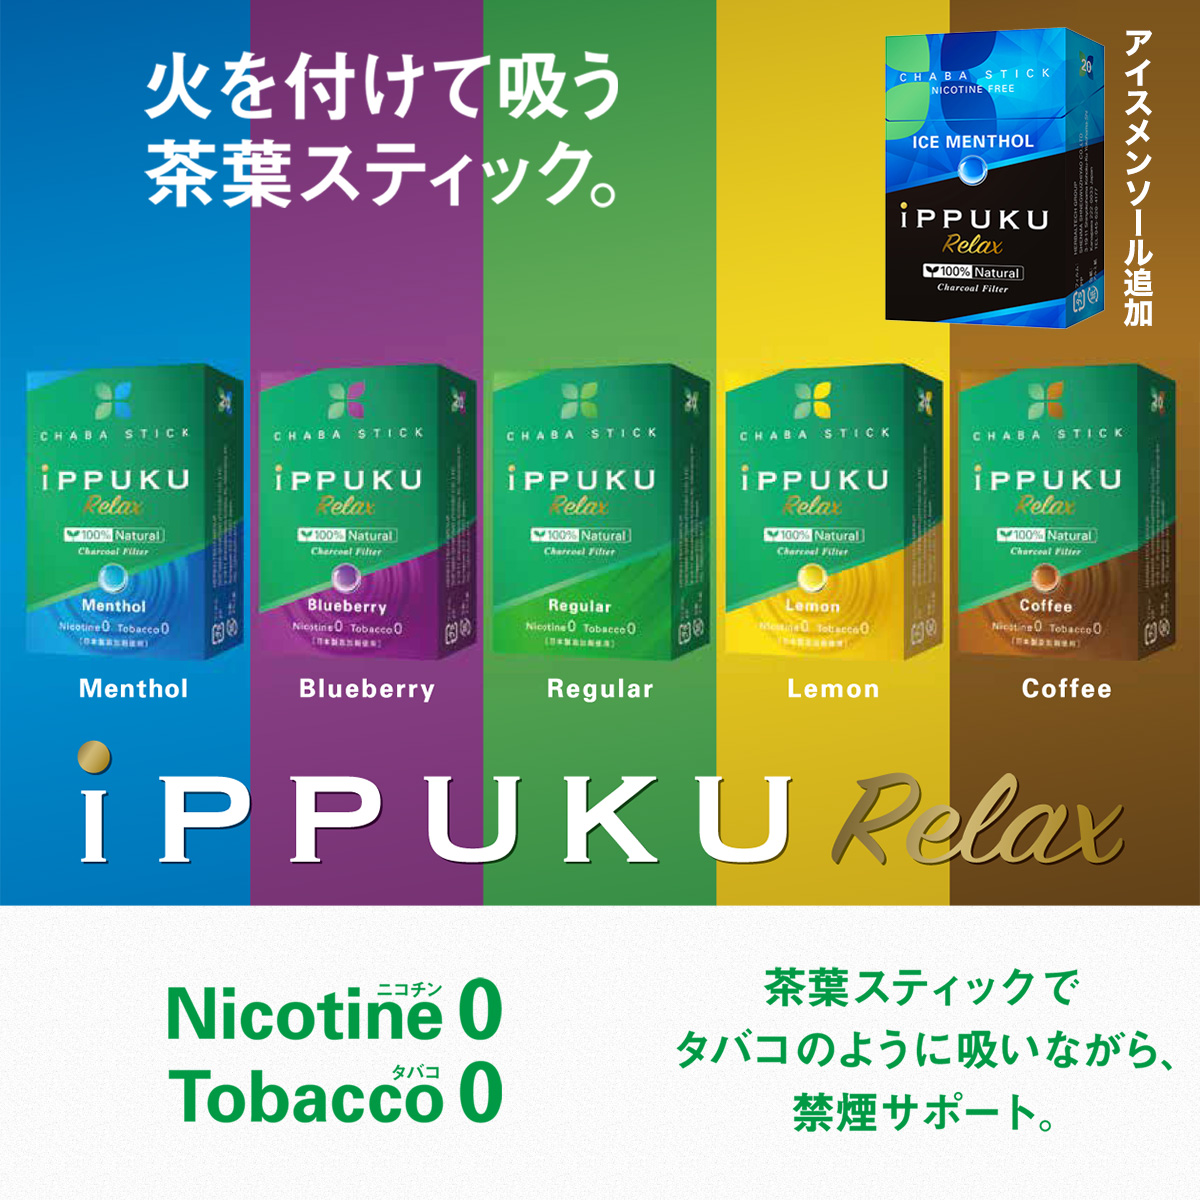 イップク・リラックス iPPUKU RELAX ‐ 禁煙 タバコ ノーニコチン 茶葉スティック  ニコチンゼロ 禁煙用グッズ 100%ナチュラル プーア−ル茶 タバコ代用品